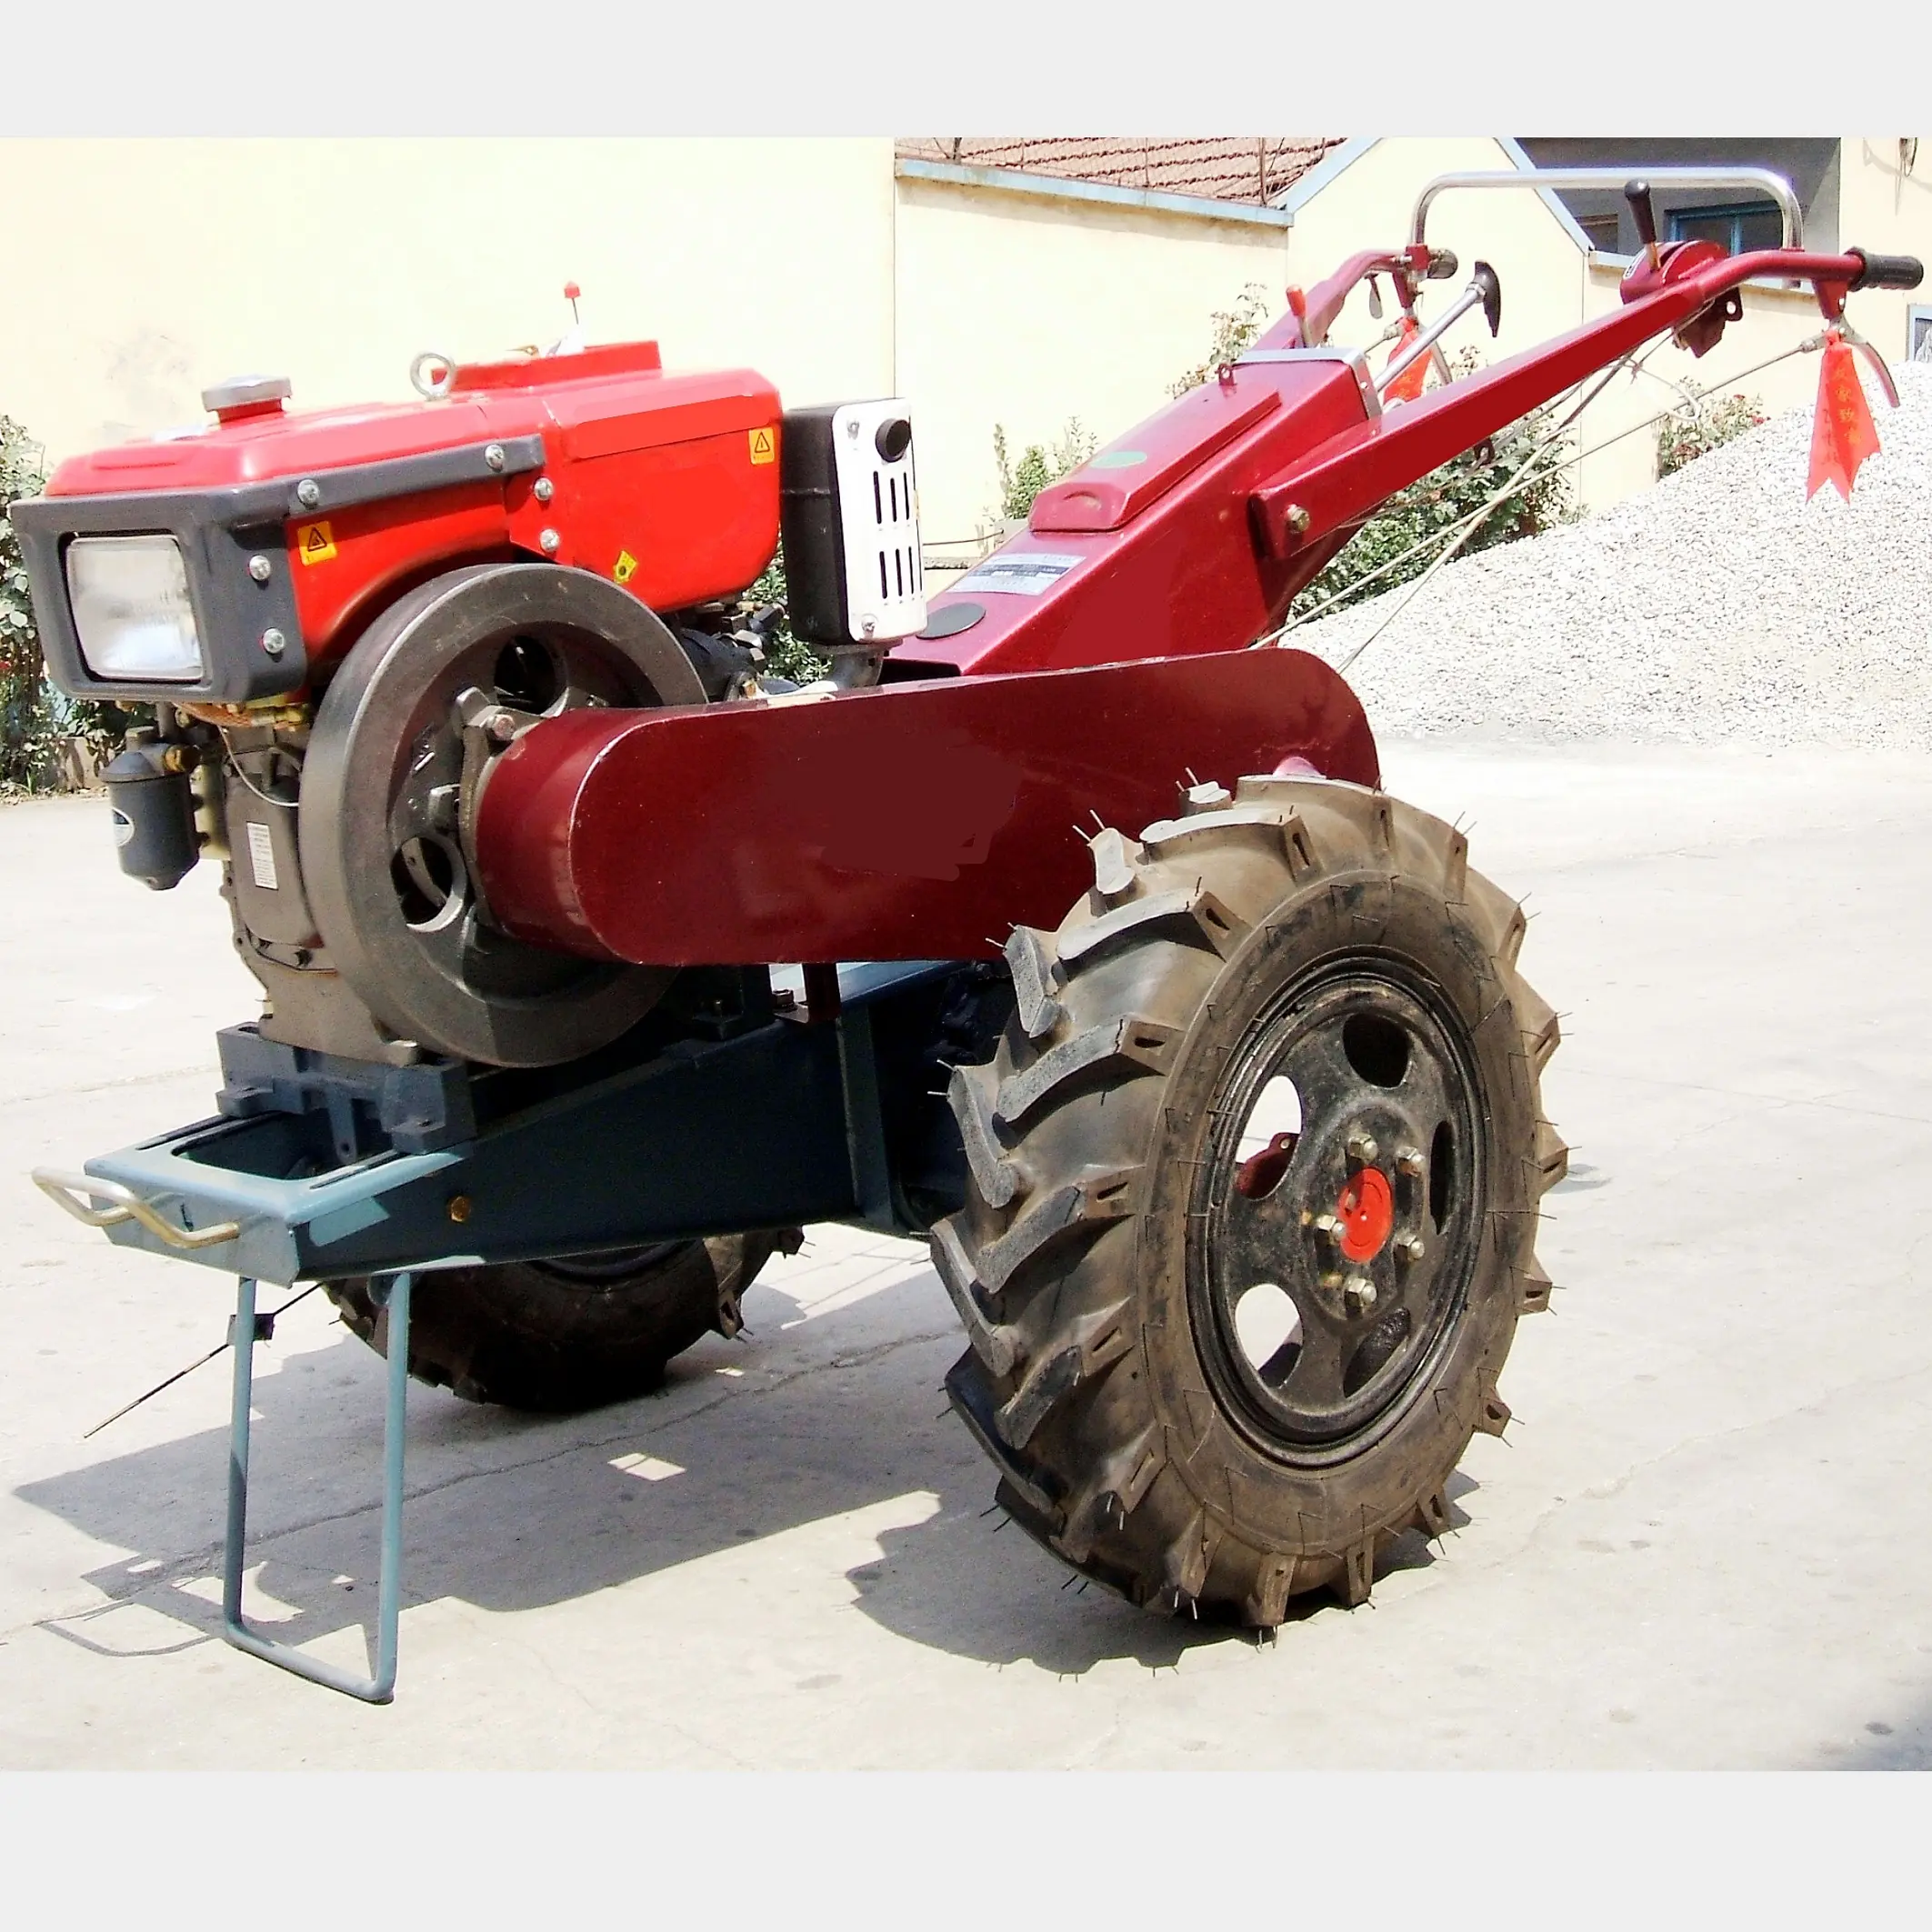 Фермерский прогулочный трактор мощностью 16 л.с. 20 л.с., двухколесный прогулочный трактор, траворез с плужом